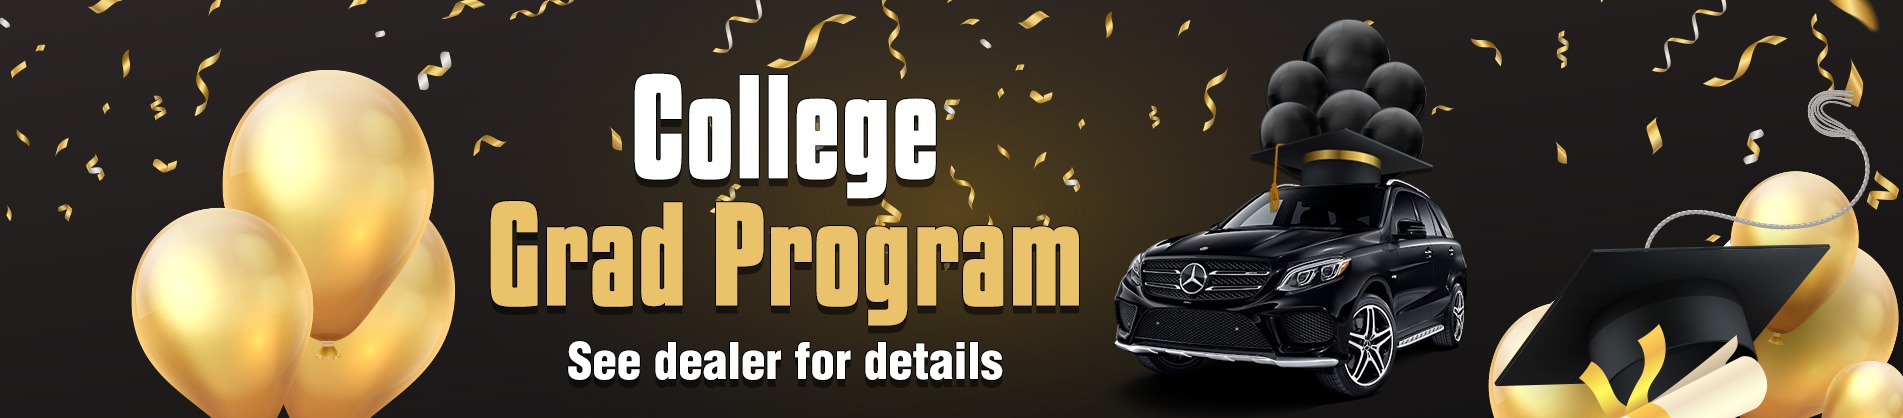 College Grad Program see dealer for details